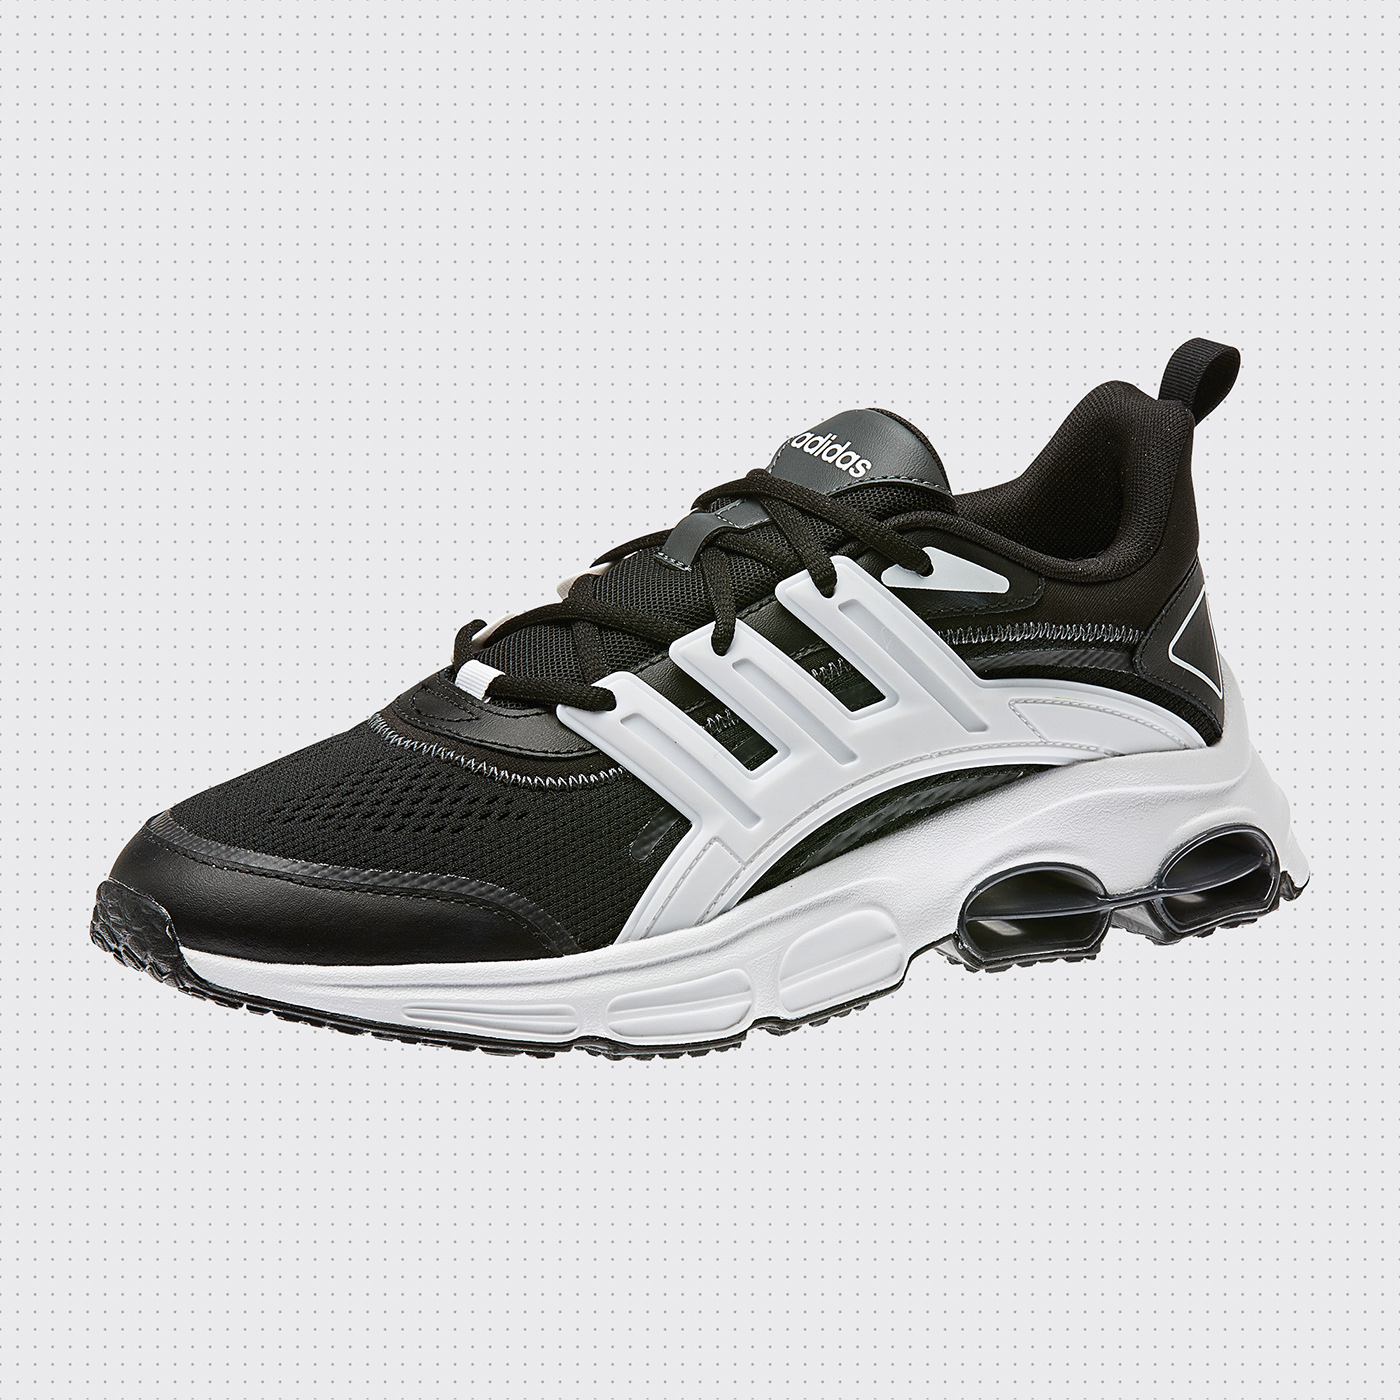 Adobe Portfolio adidas industrial NEO runner running sample sneaker tech